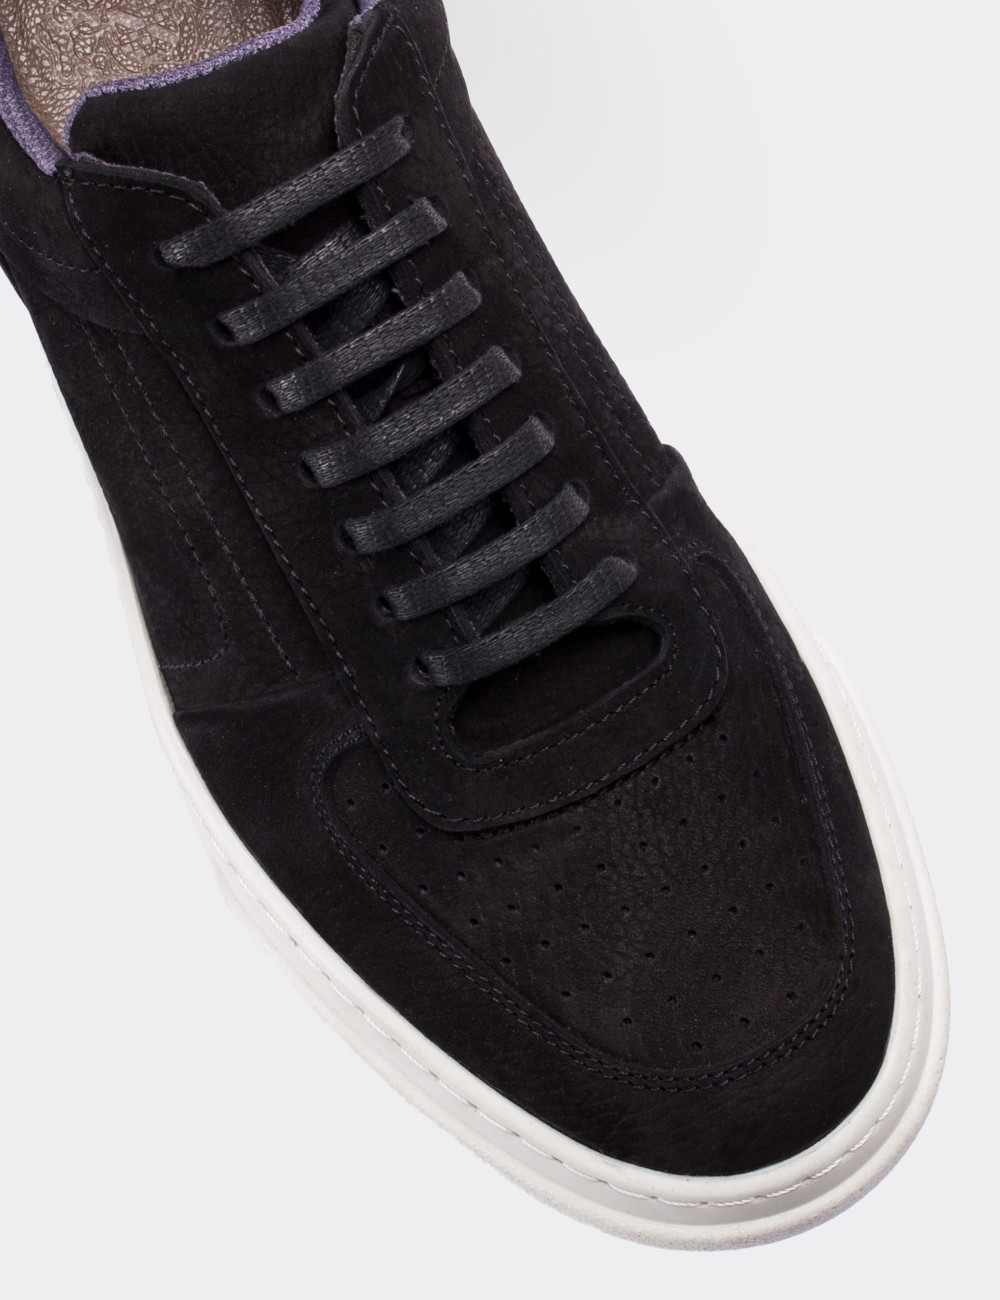 Black Nubuck Leather Sneakers - 01716MSYHP02